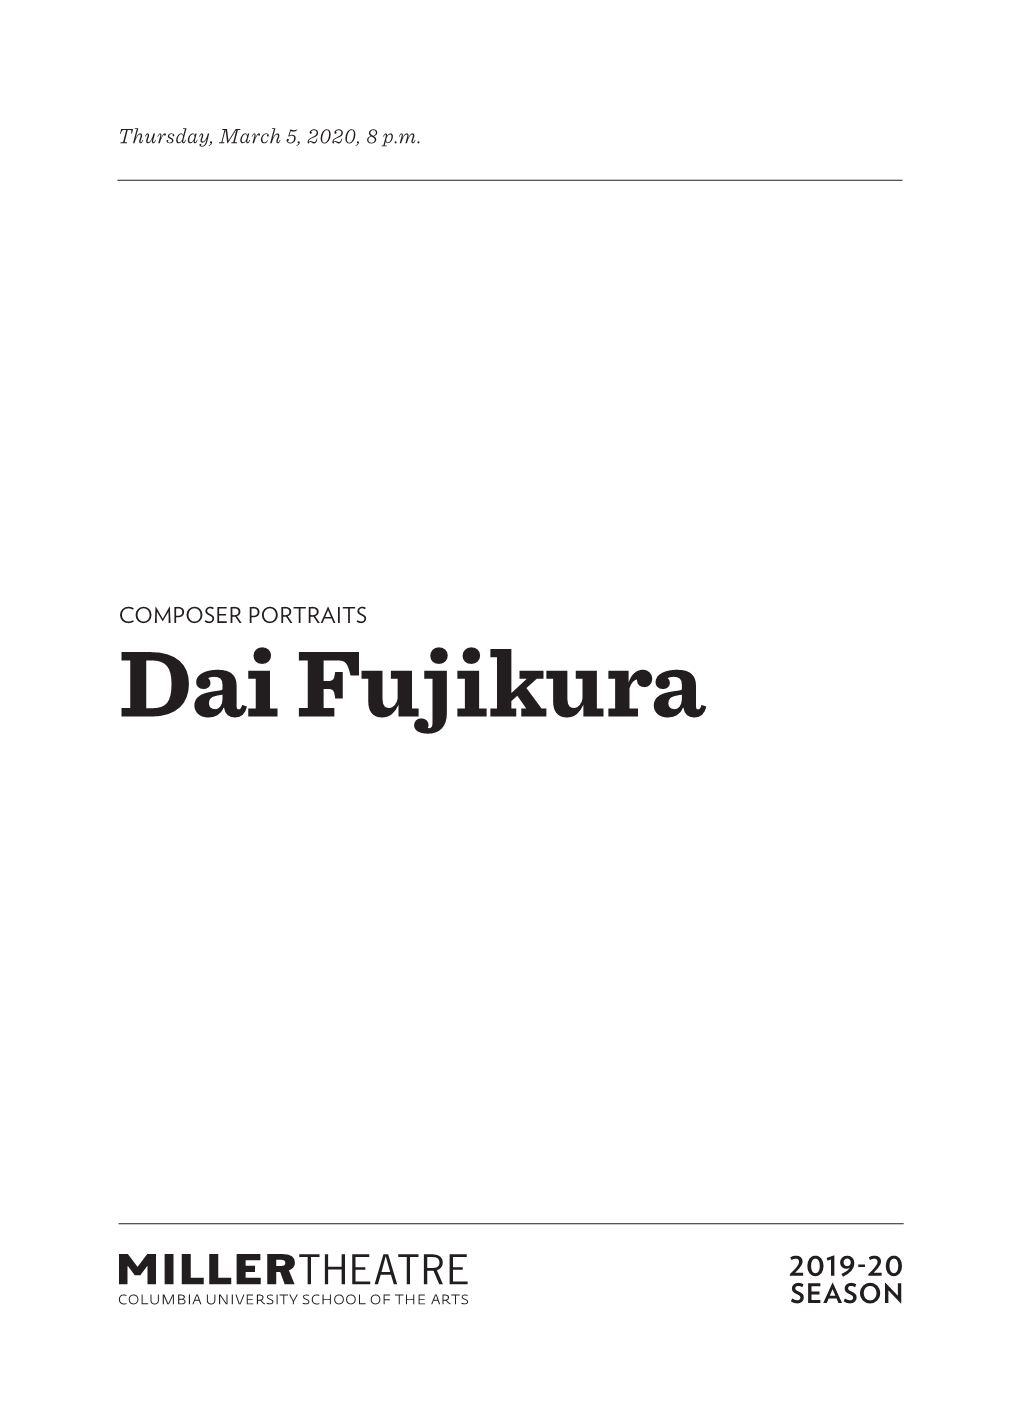 Dai Fujikura